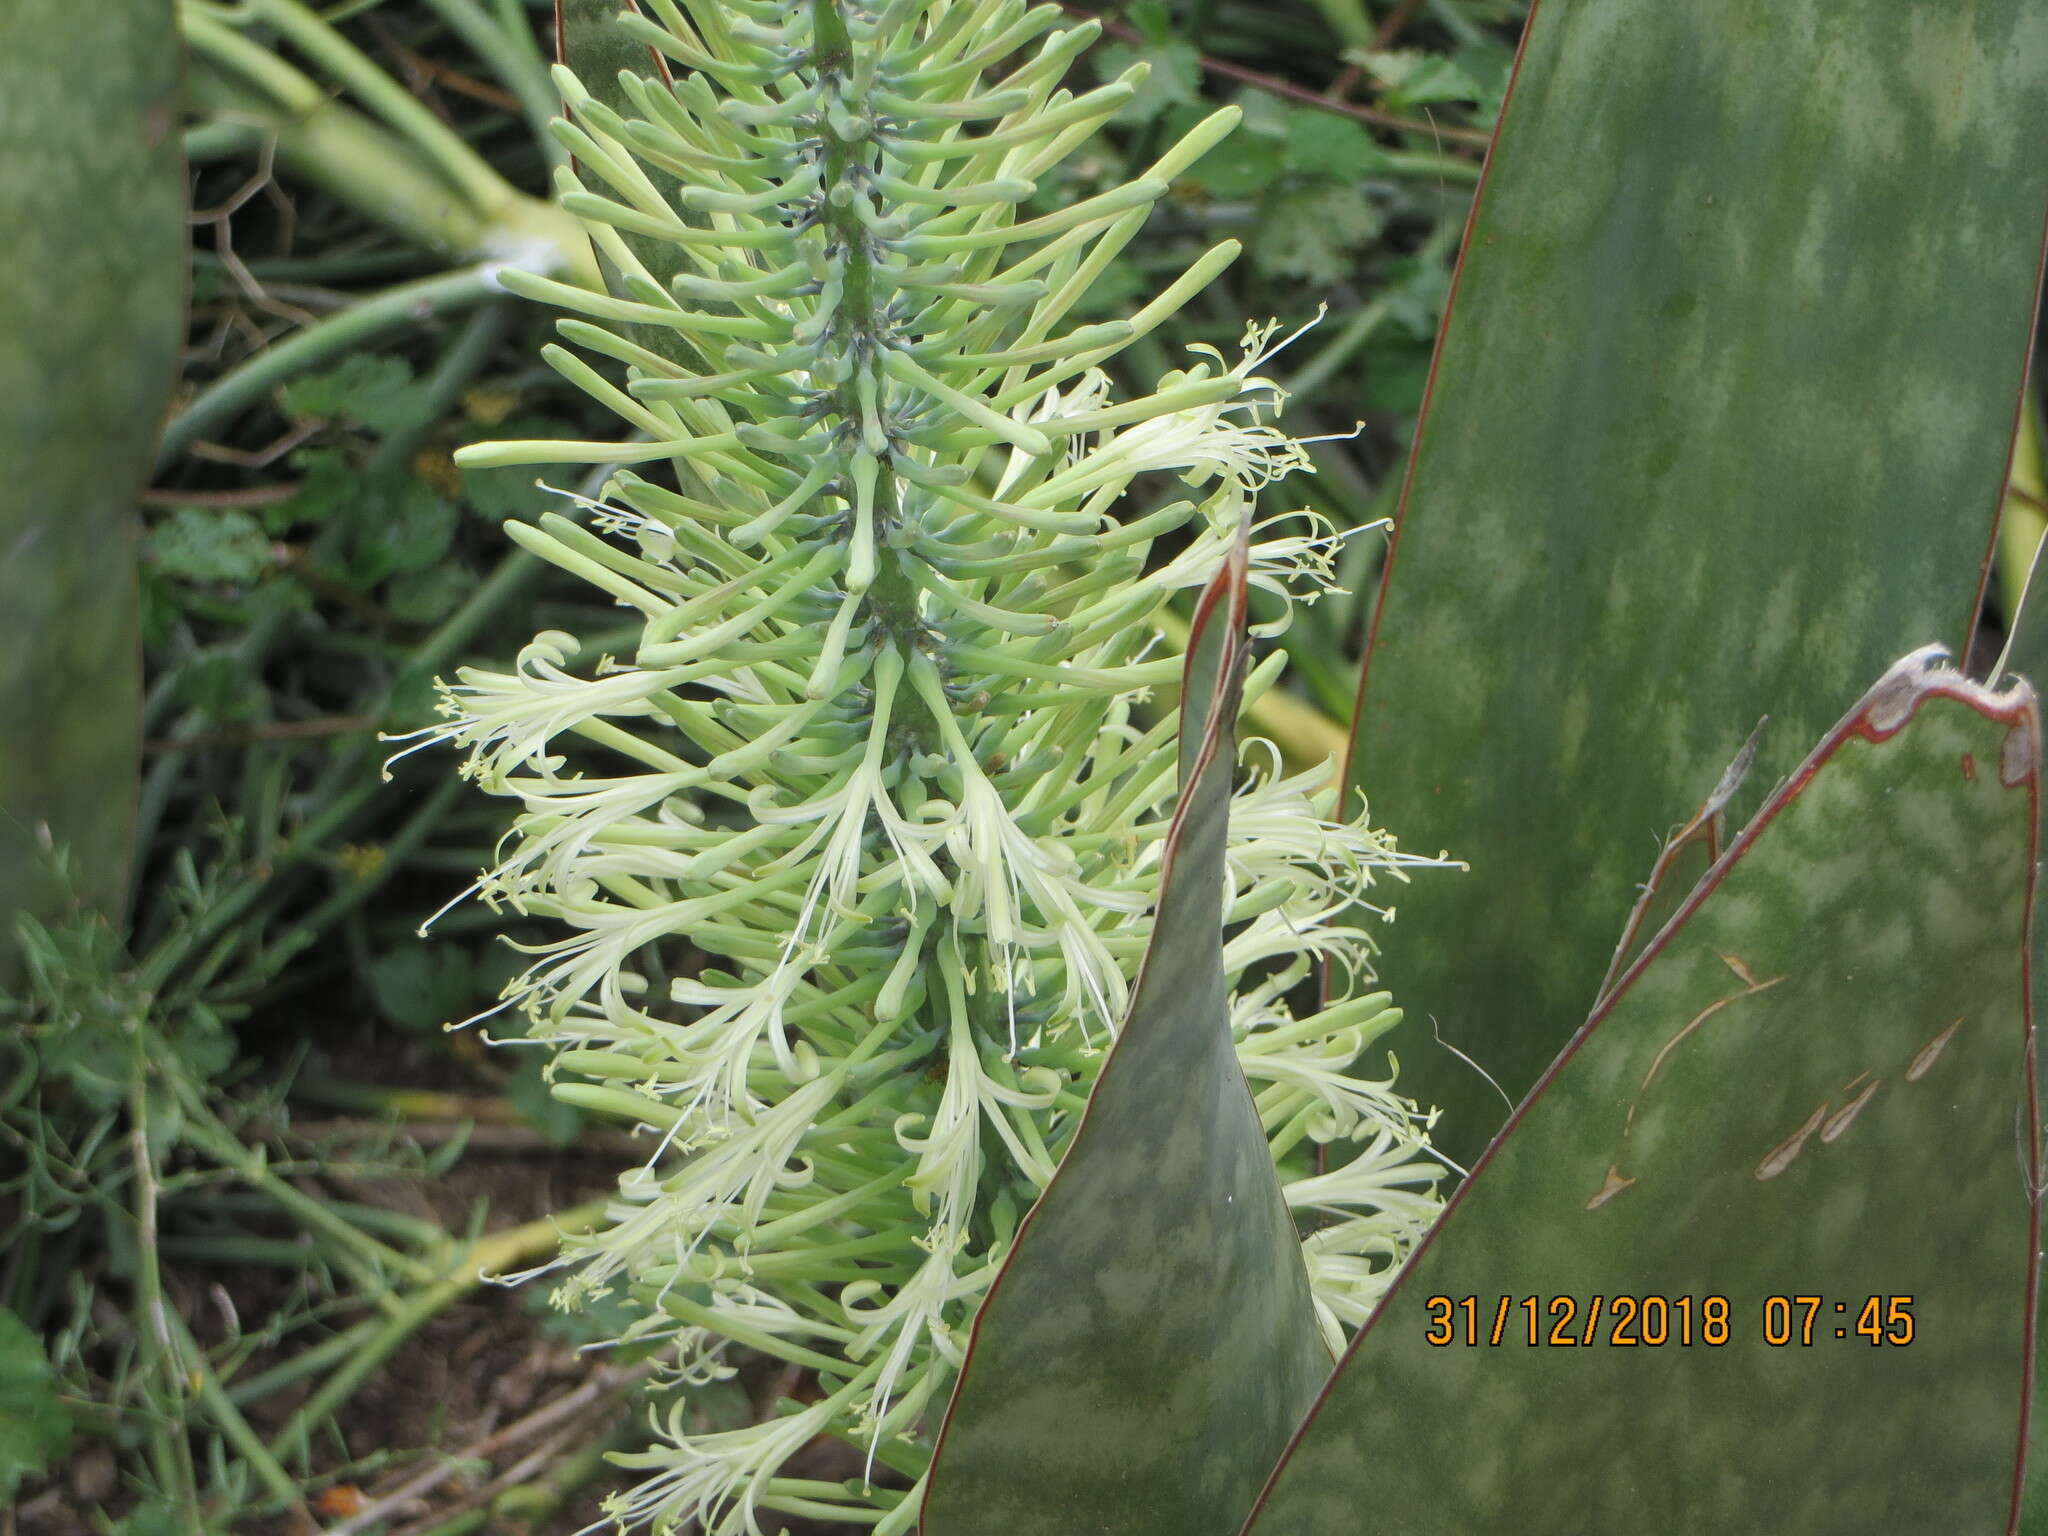 Image of iguanatail